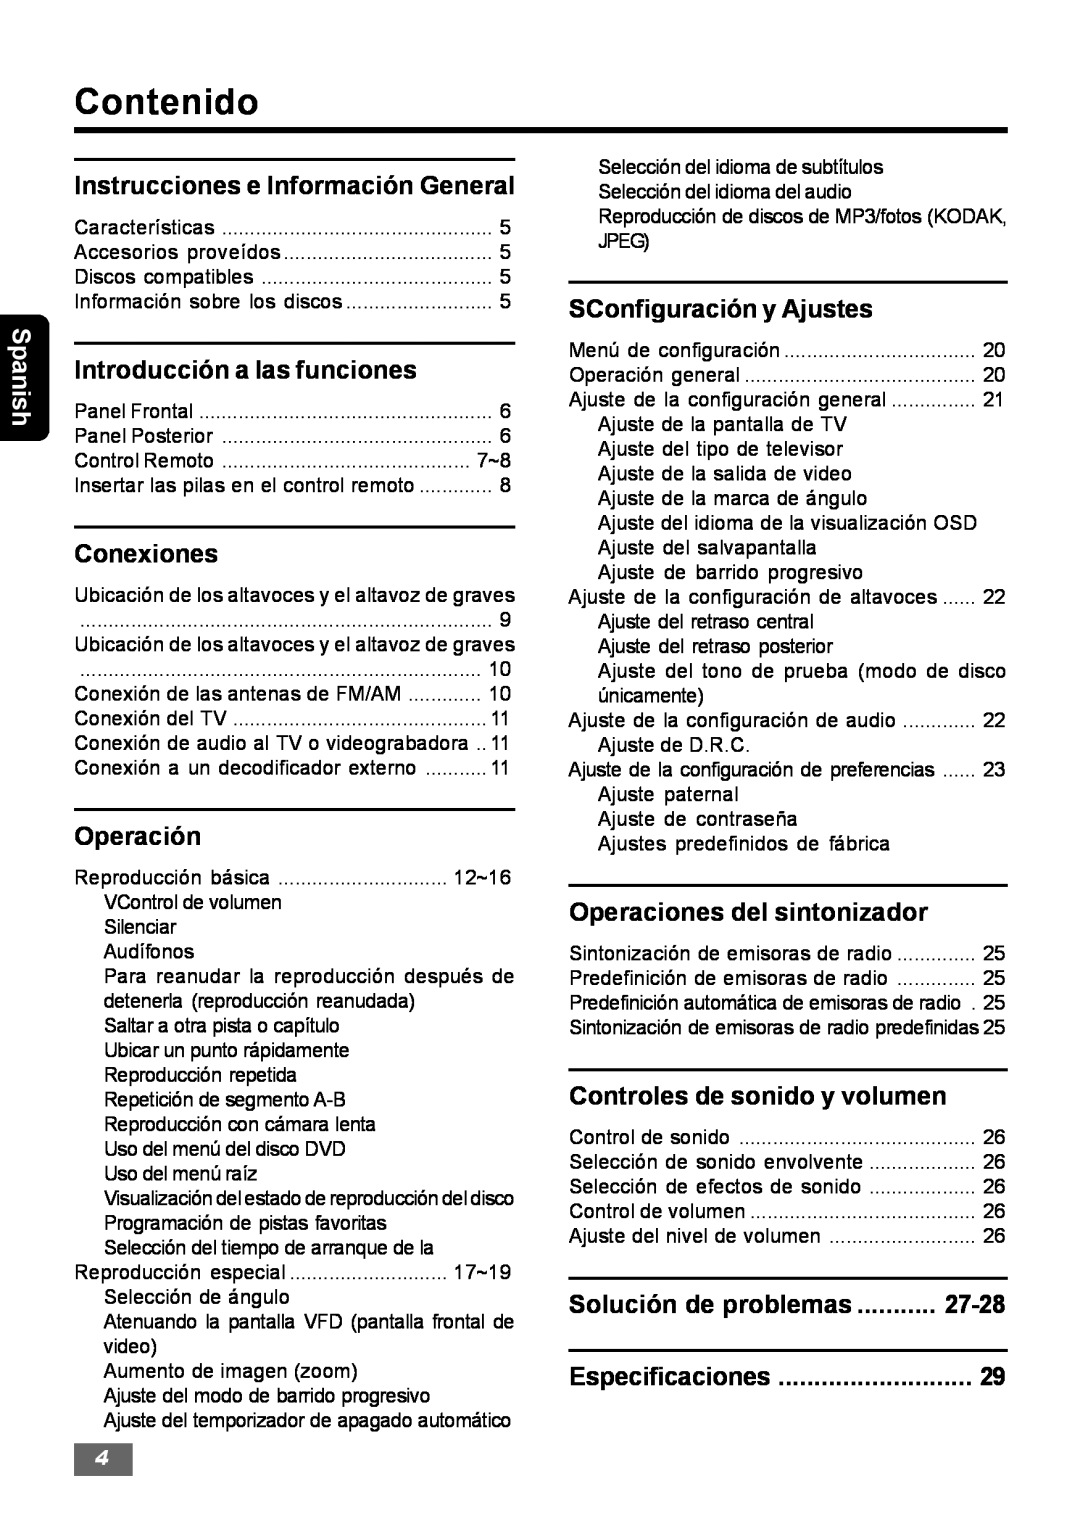 Insignia IS-HTIB102731 owner manual Contenido, Spanish 